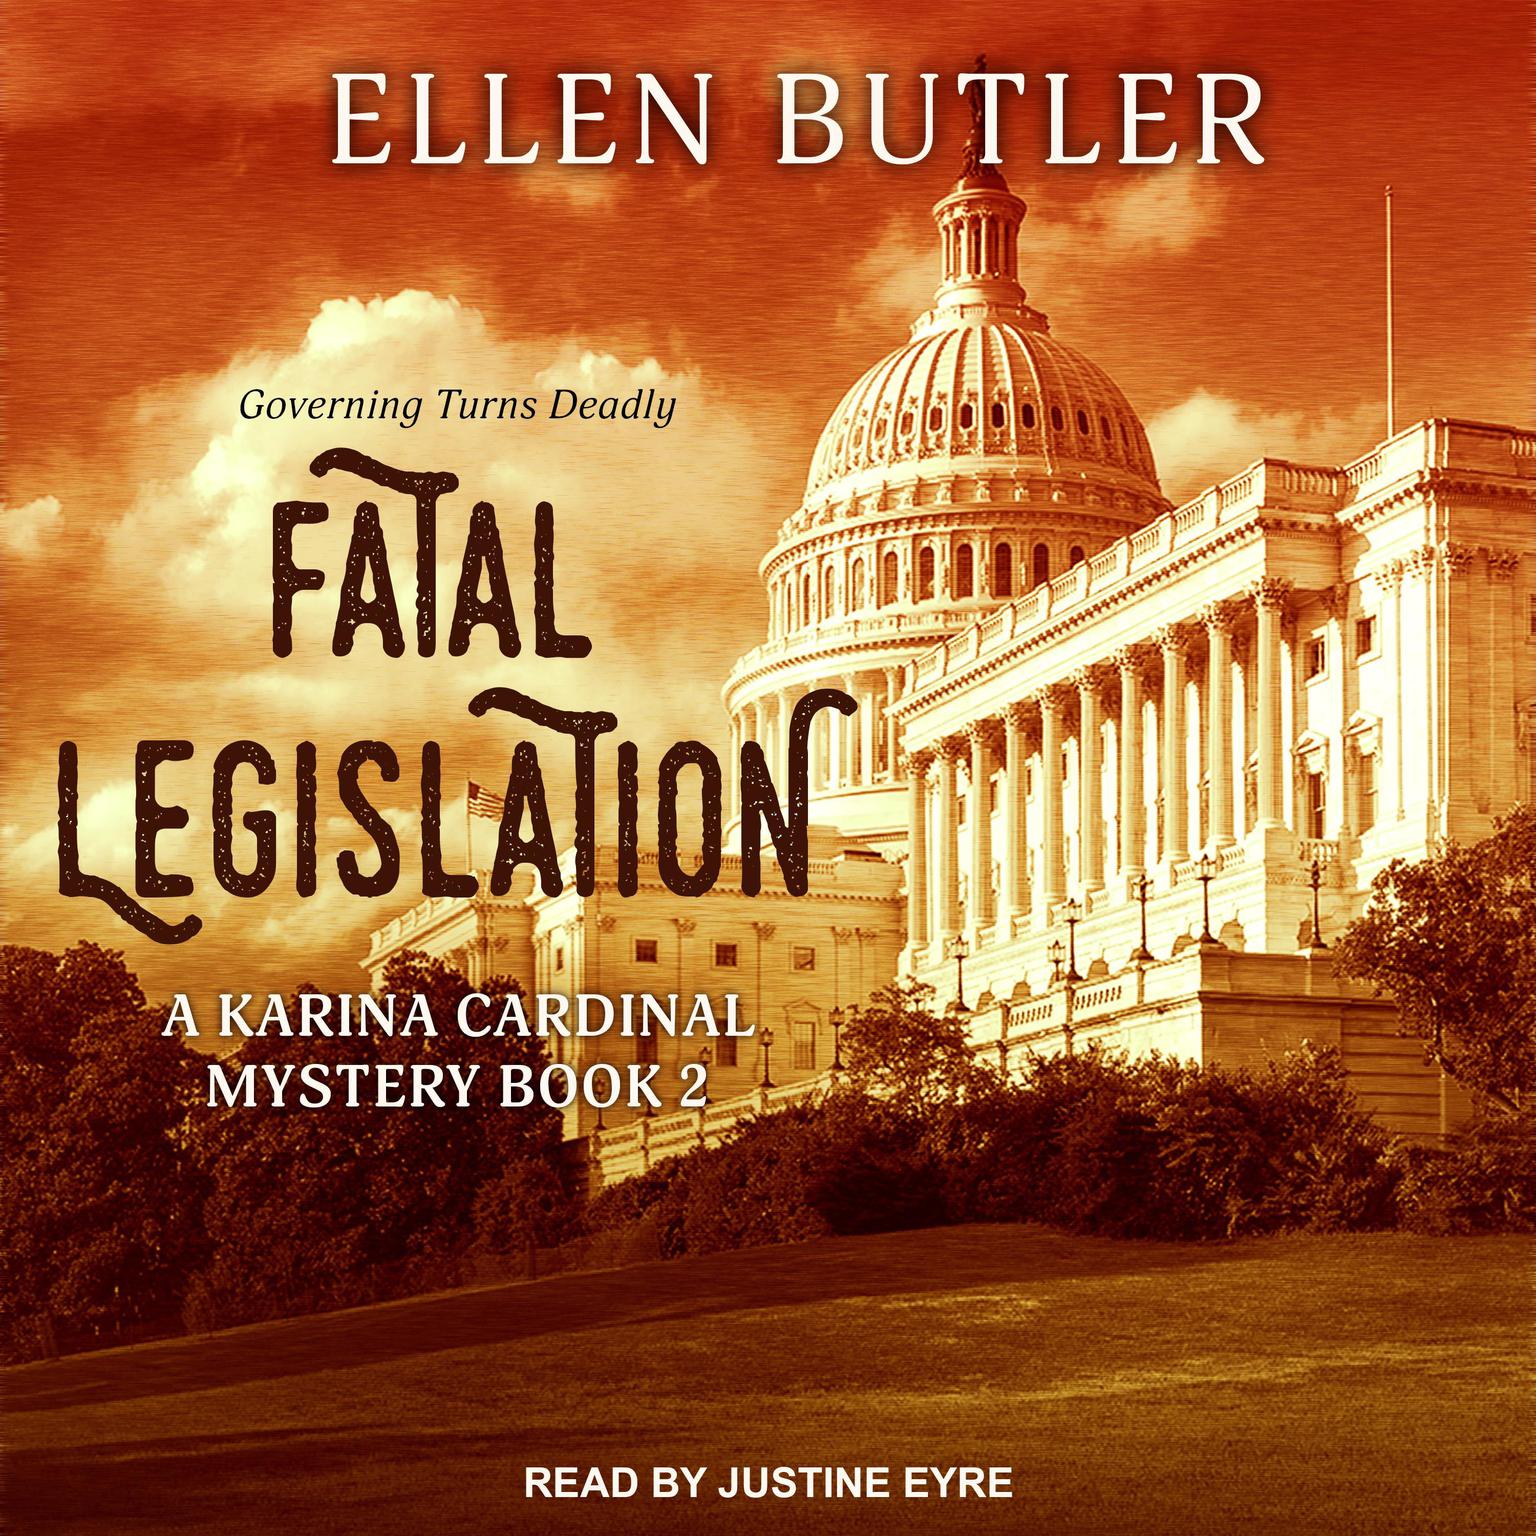 Fatal Legislation: A Capitol Hill Murder Audiobook, by Ellen Butler